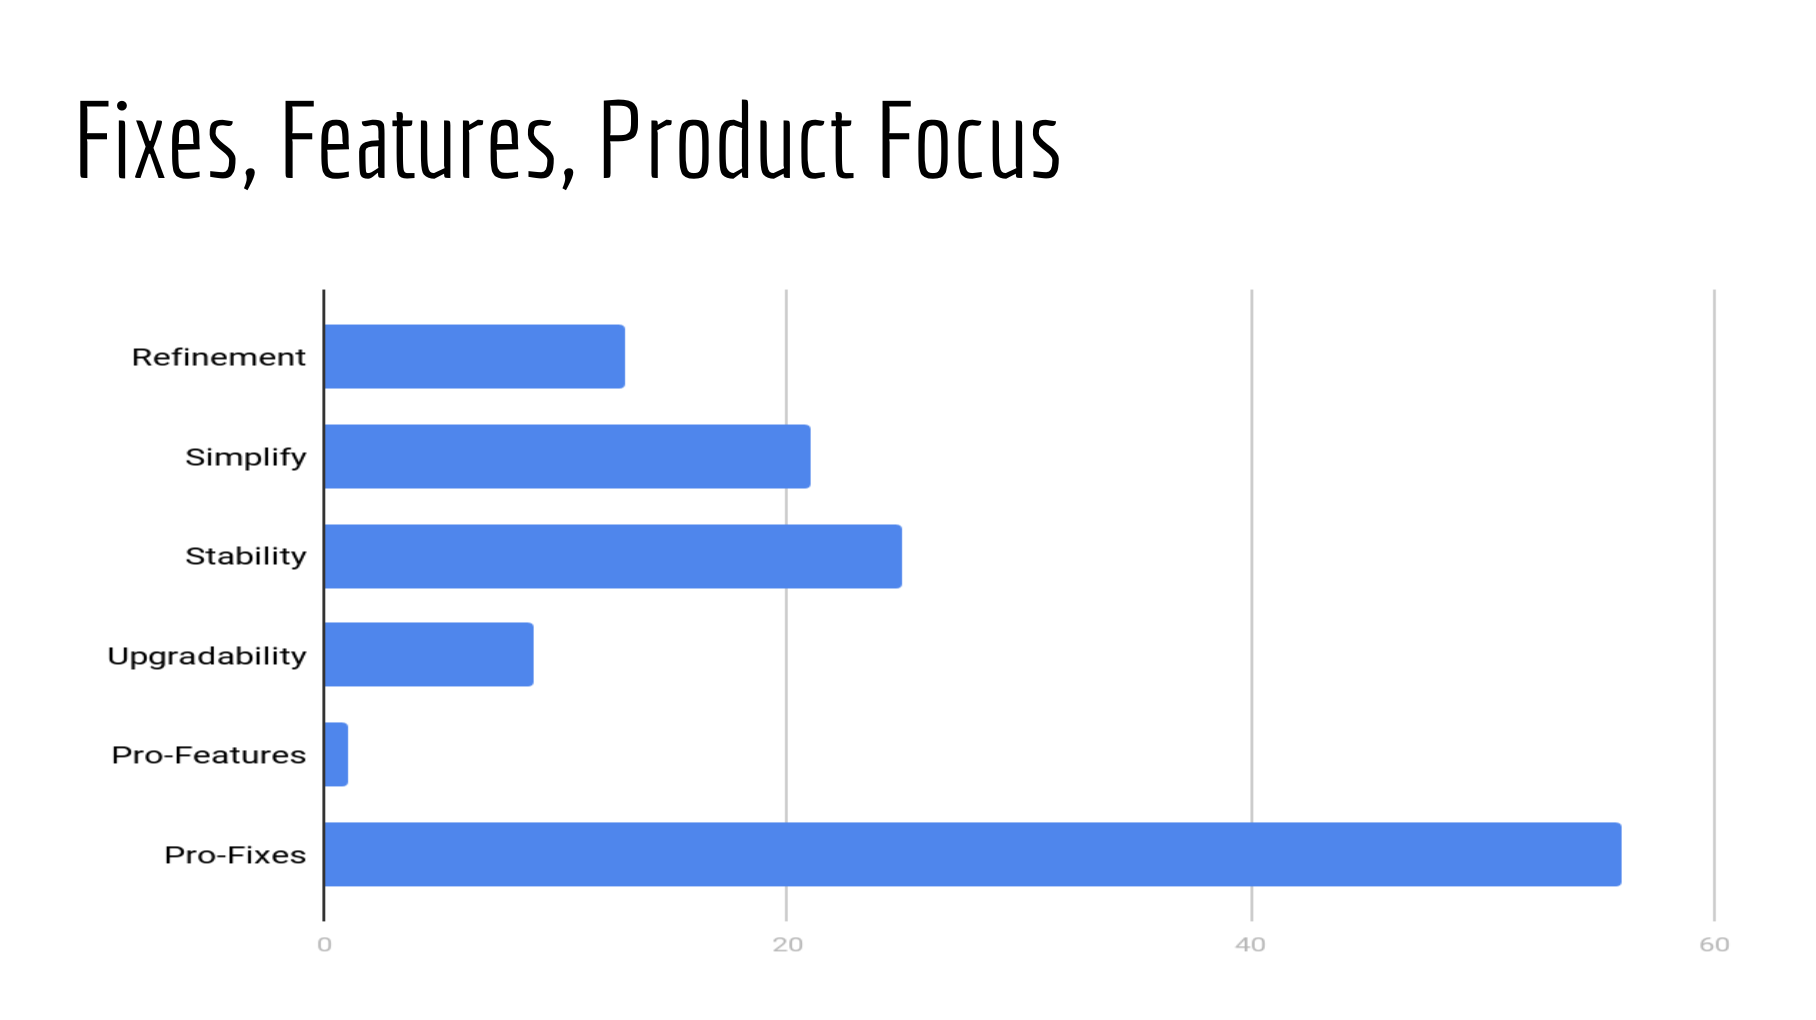 Product Focus